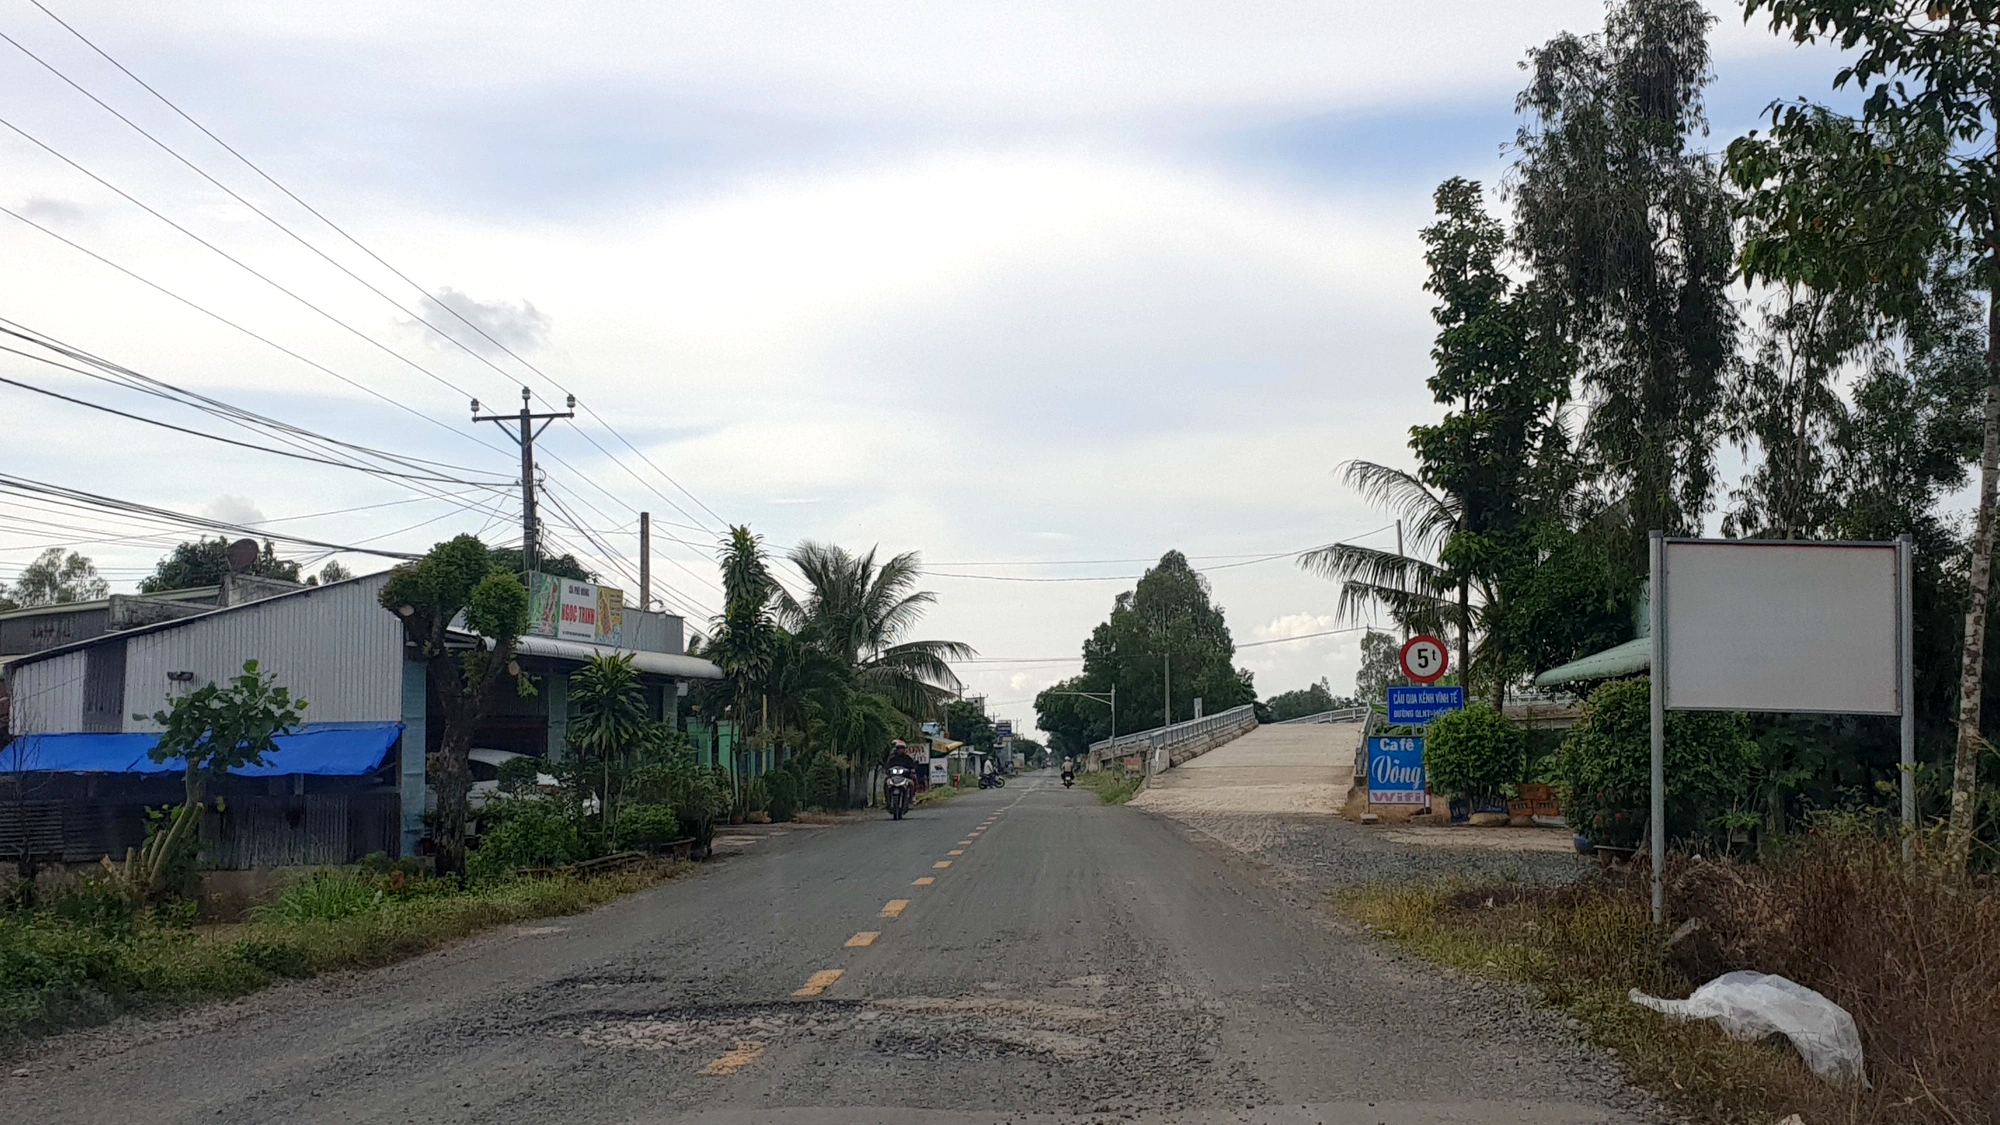 Quốc lộ N1 qua Kiên Giang xuống cấp sau 20 năm sử dụng - Ảnh 4.